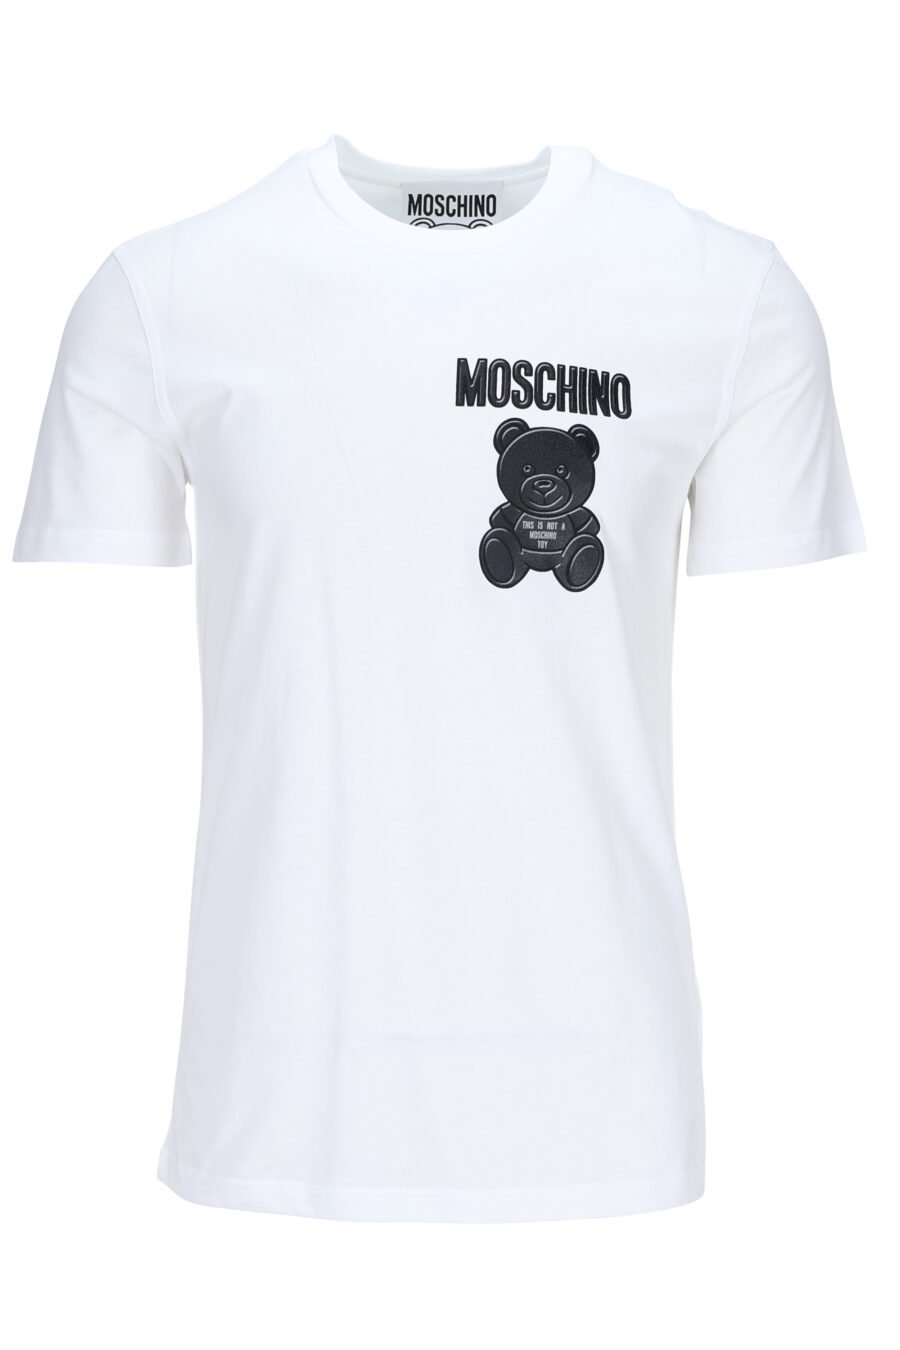 T-shirt blanc en éco-coton avec mini-logo noir "teddy" - 889316853131